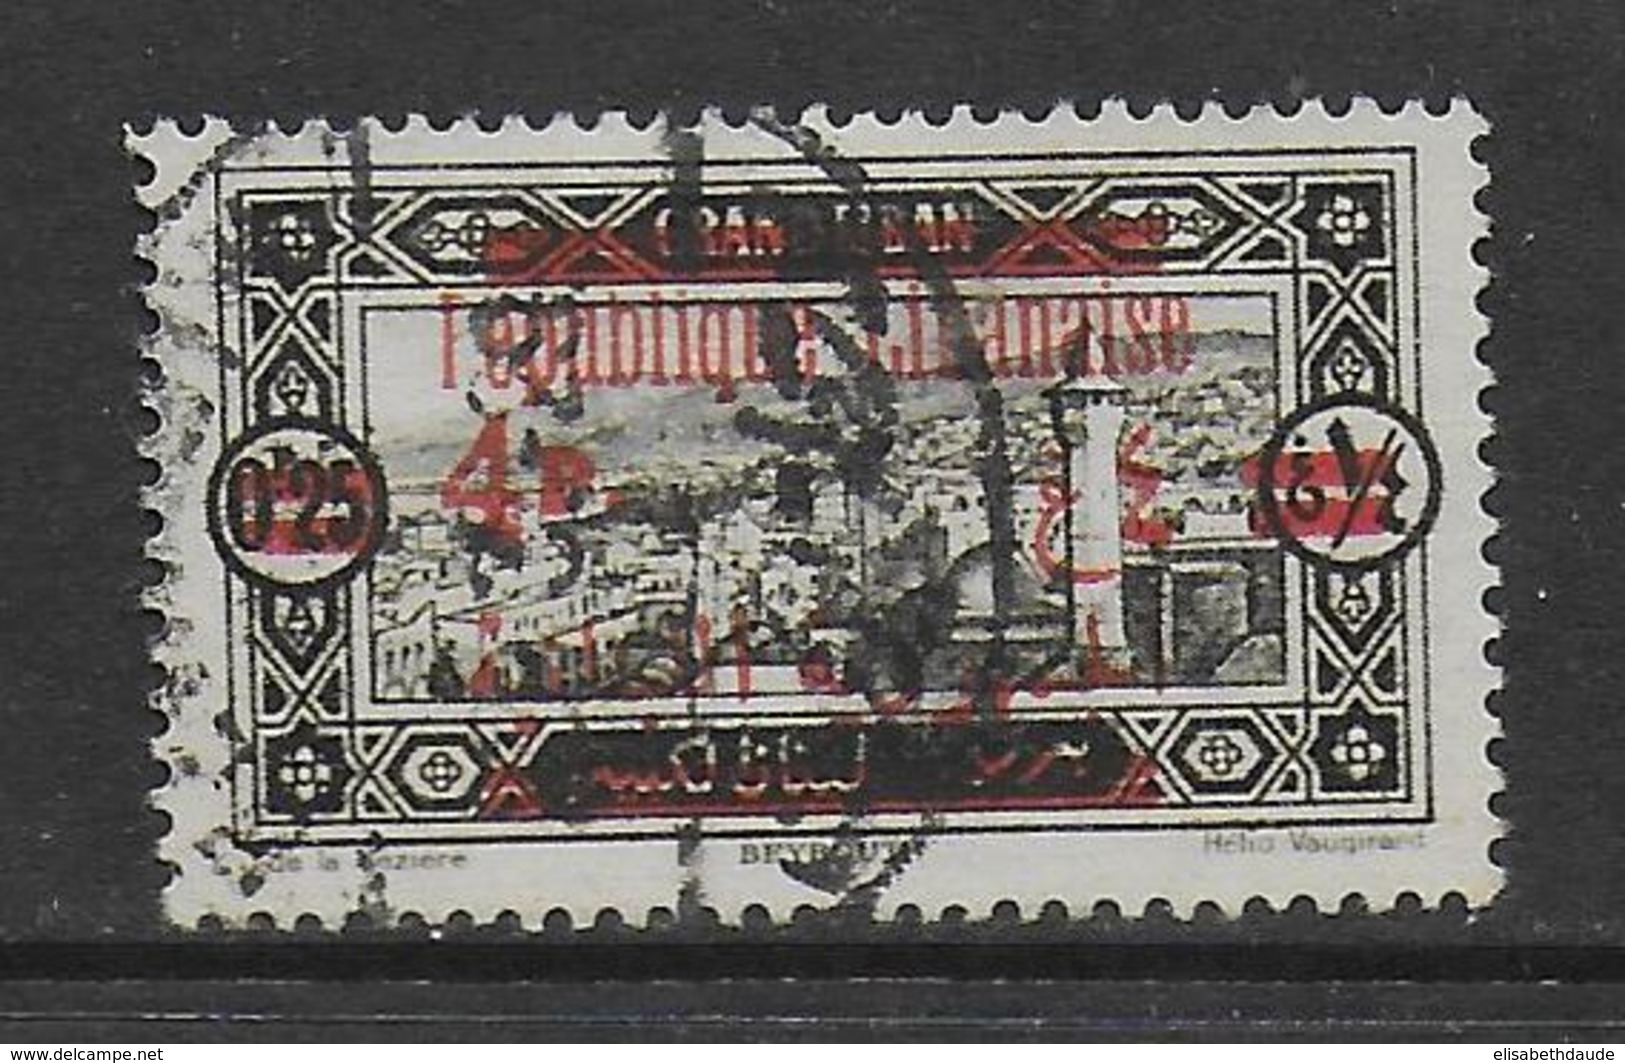 GRAND-LIBAN - 1928 - YVERT N°119 SURCHARGE RECTO-VERSO OBLITERE - COTE = 80 EUR. - Gebruikt